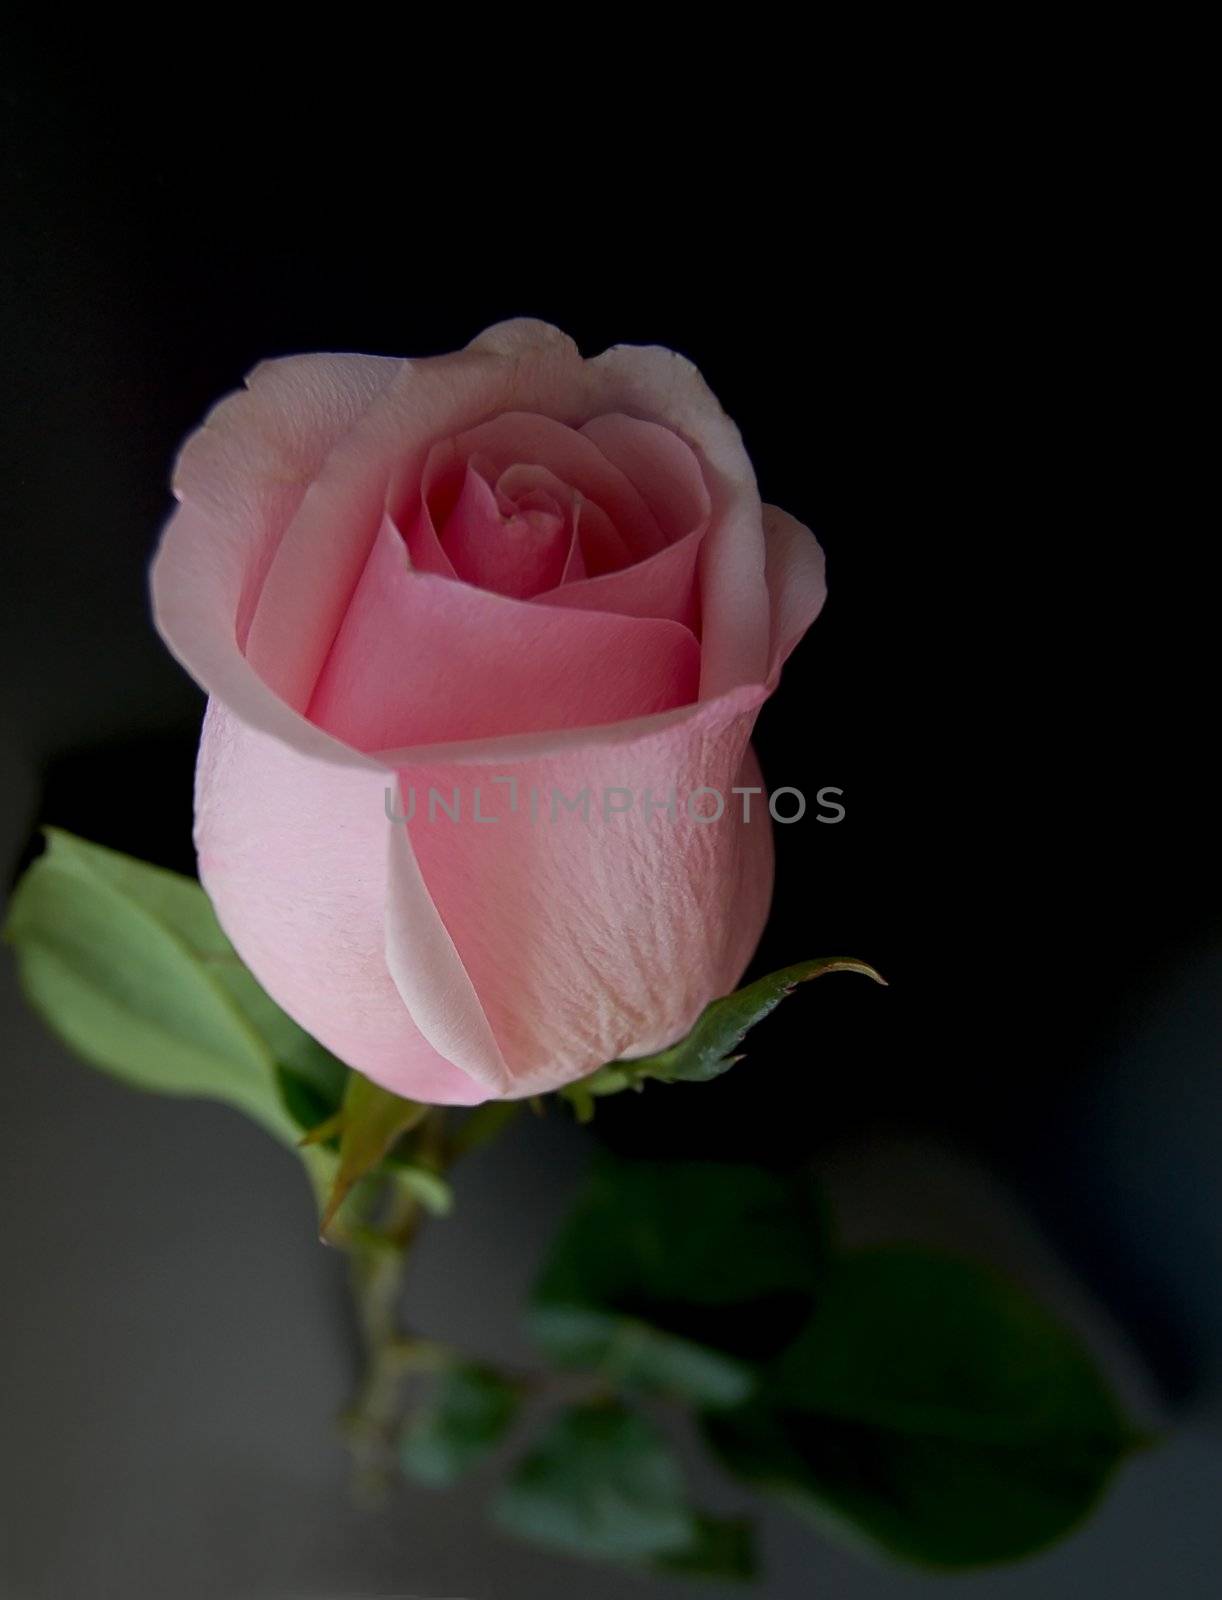 rose on black by mettus